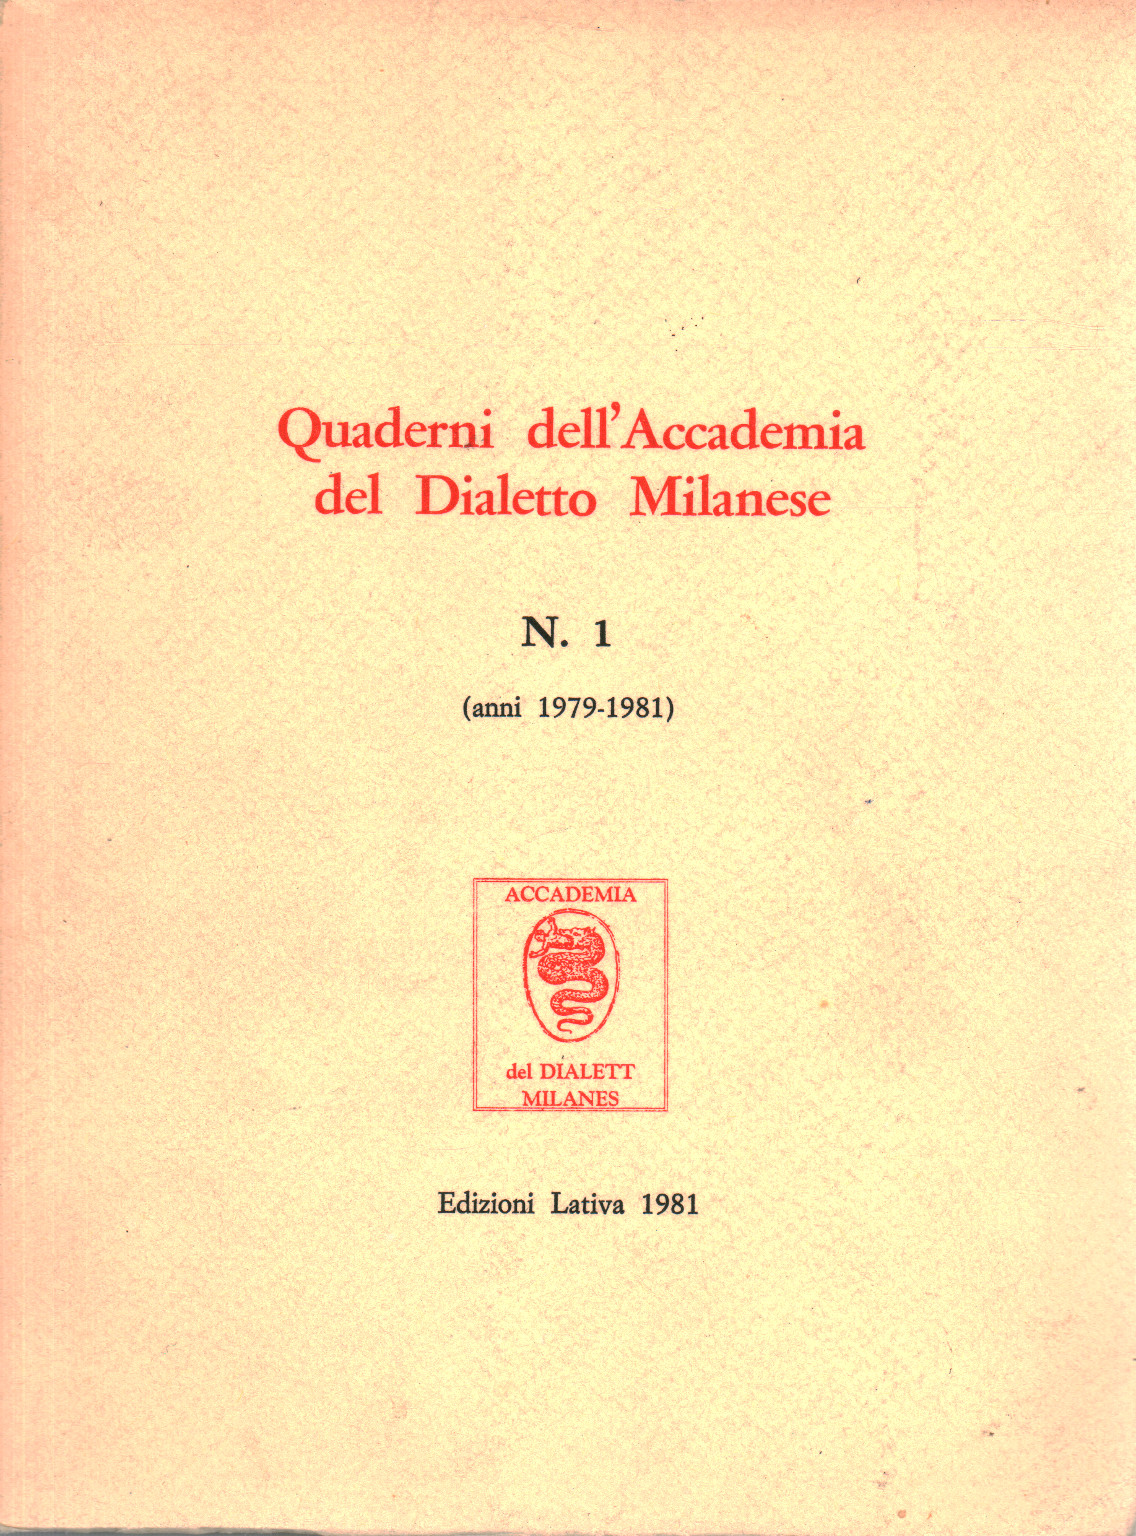 Quaderni dell Accademia del Dialetto Milanese N.1, s.a.